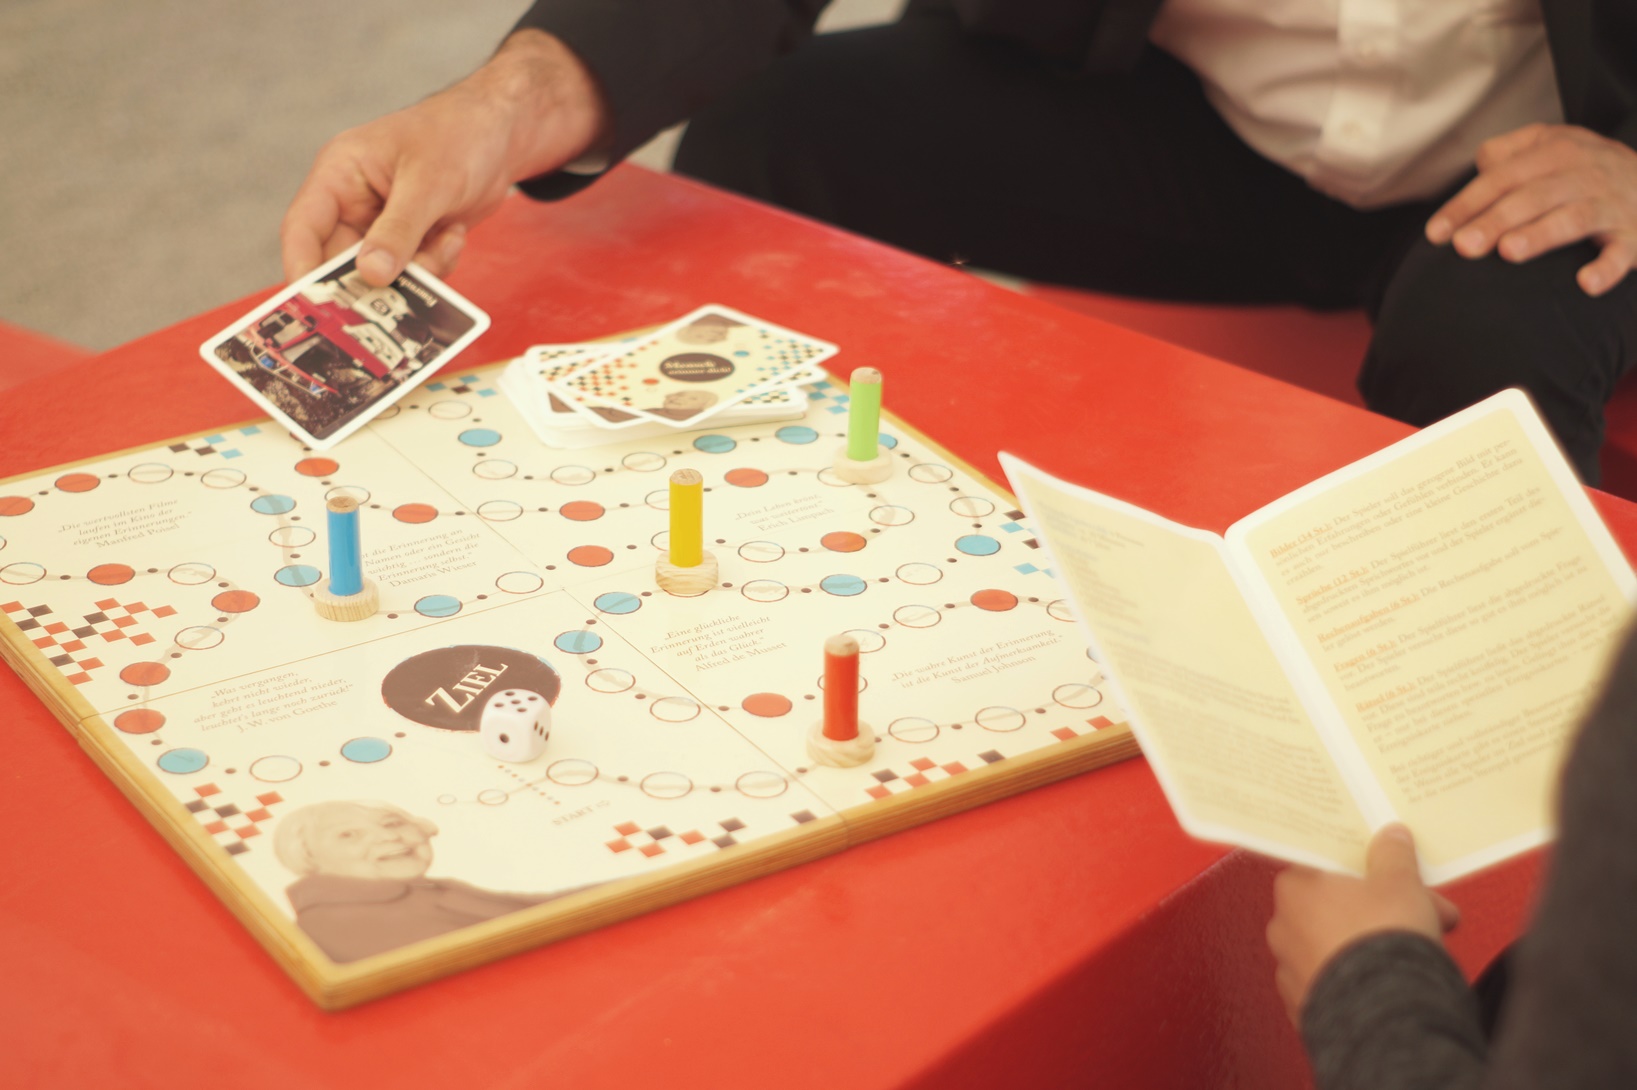 Zwei Personen spielen das DRK Brettspiel "Mensch erinner dich". Eine Person zieht eine Karte, die andere liest aus der Anleitung vor. Von beiden Personen sieht man nur die Hände.